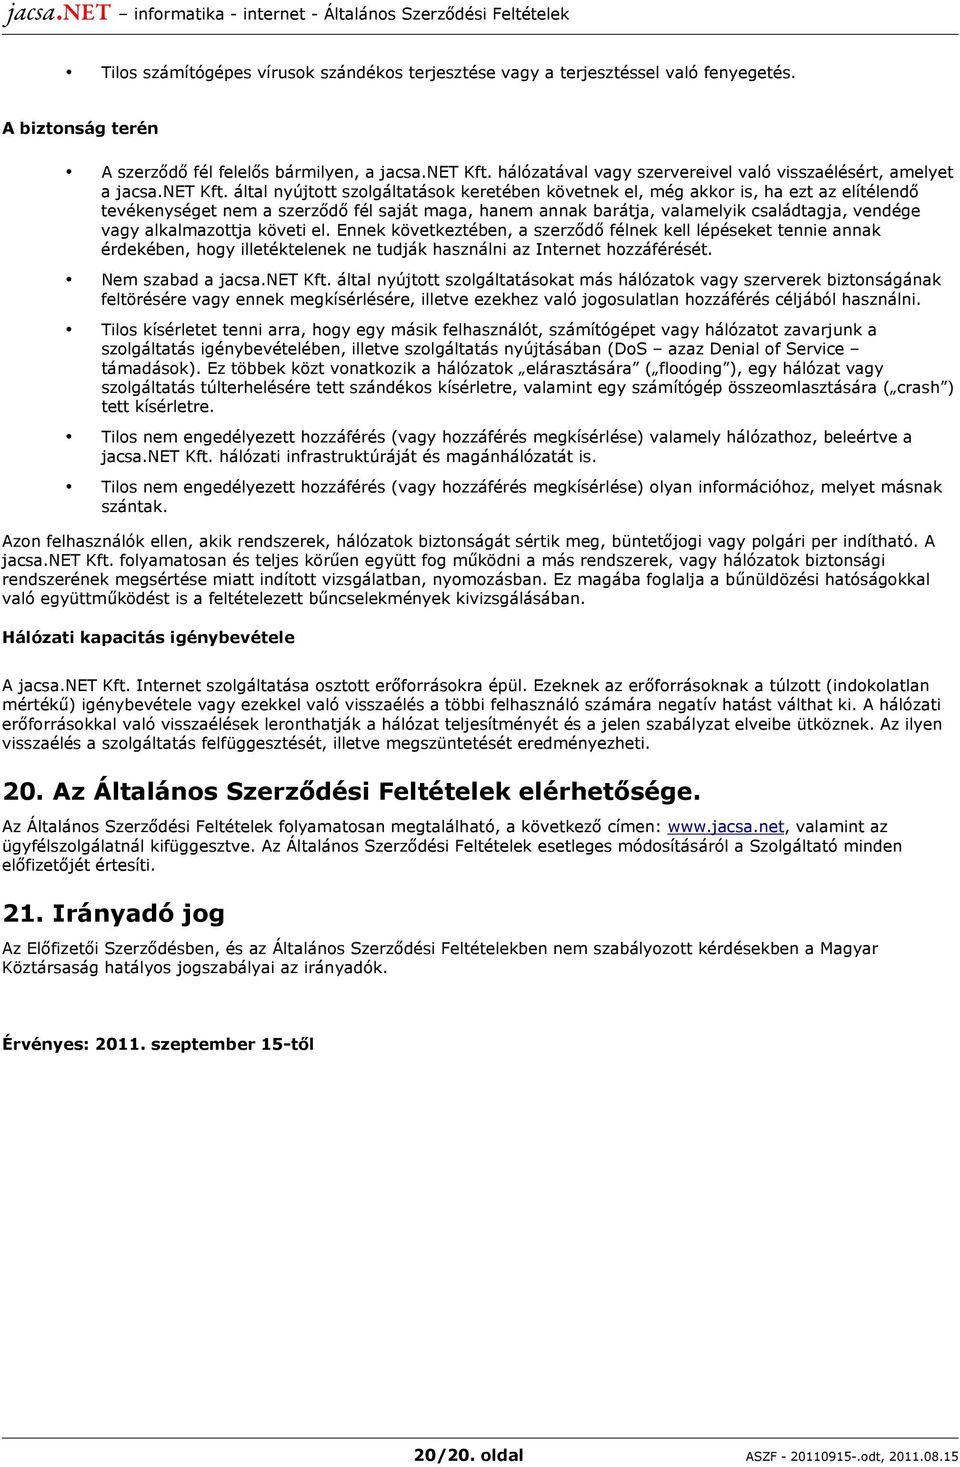 A jacsa.net Kft. Internet szolgáltatására vonatkozó Általános Szerződési  Feltételek - PDF Ingyenes letöltés